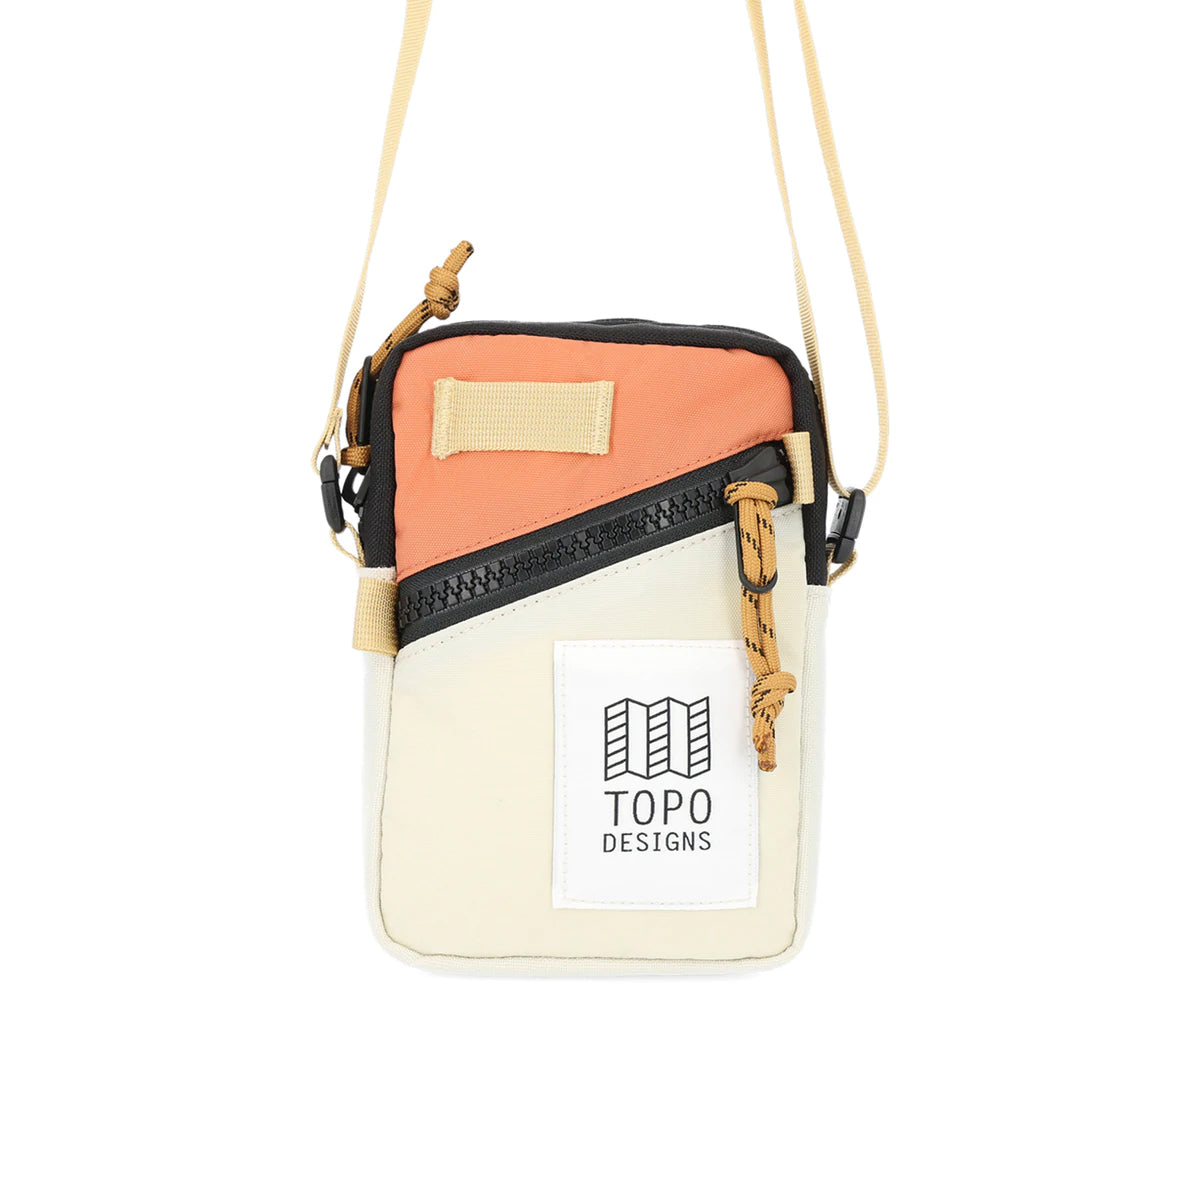 Topo Designs : Mini Shoulder Bag : Bone White/Coral